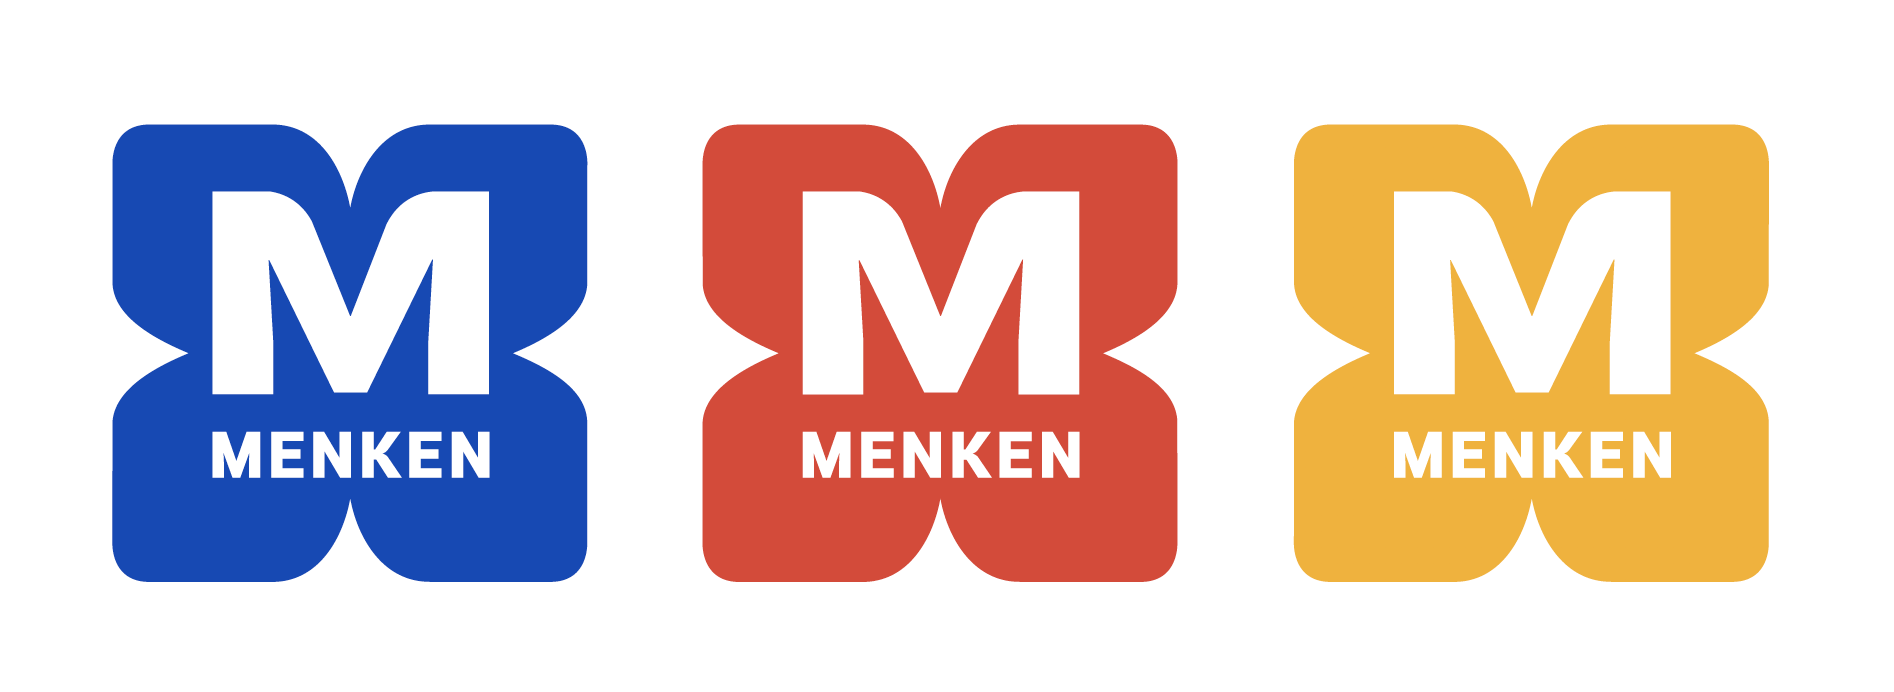 Menken logo